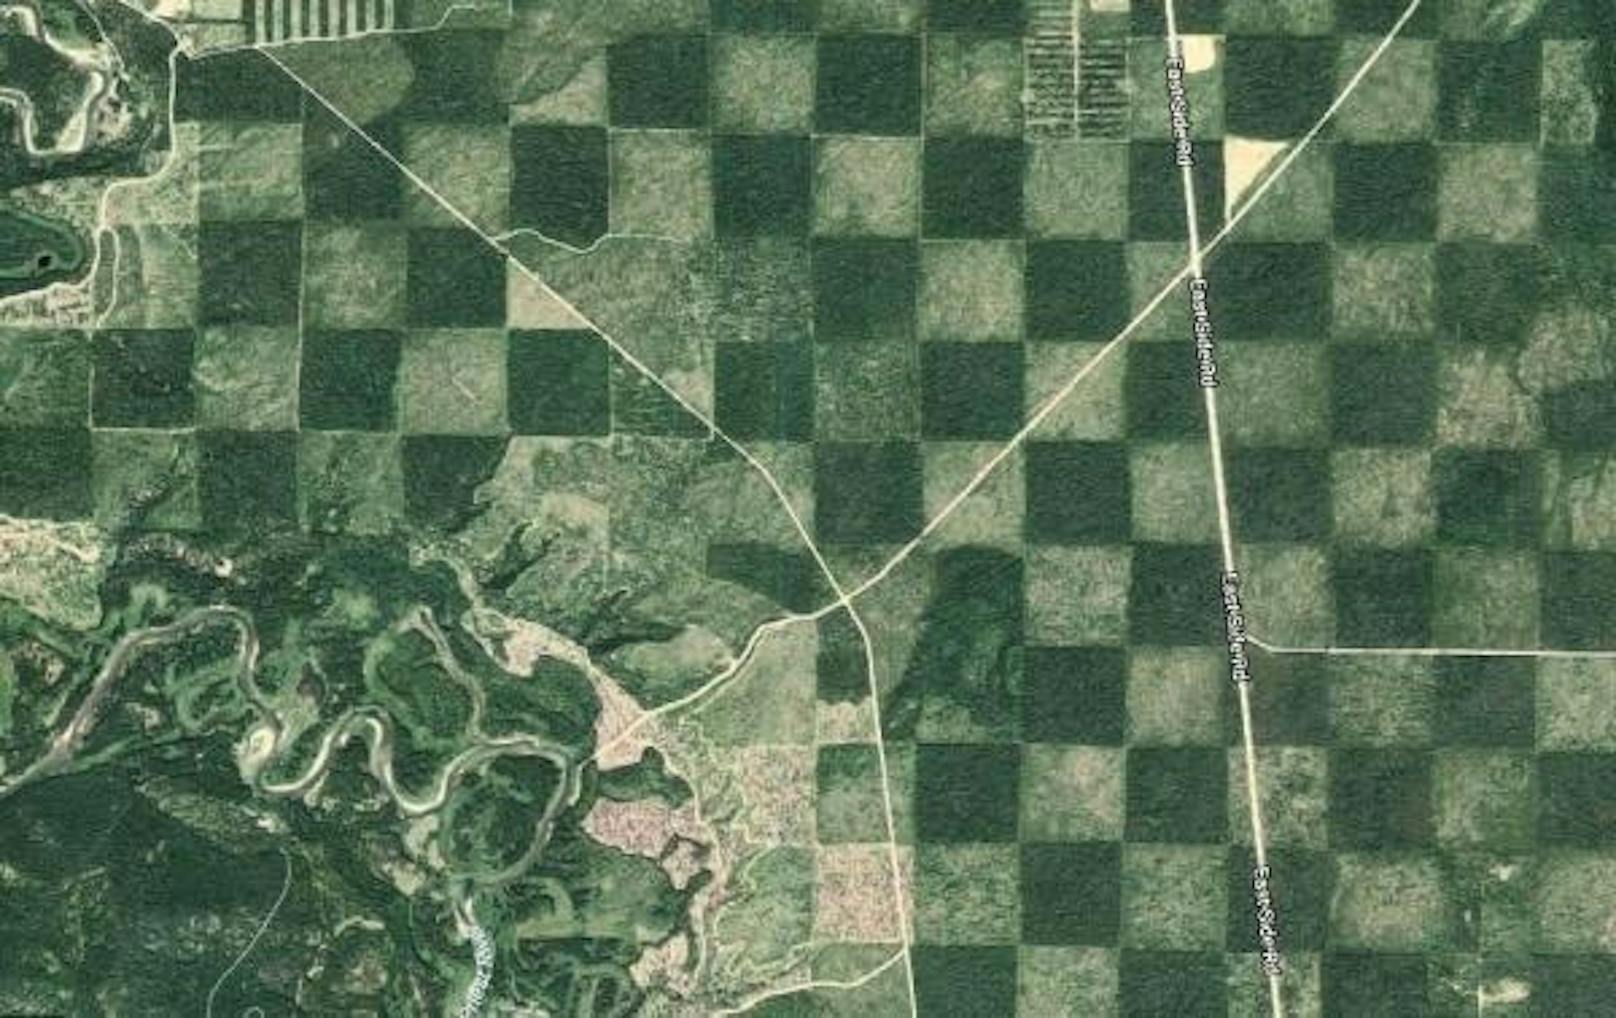 Solche Schachbrettmuster finden sich im Westen der USA zuhauf. Dieses liegt in der Nähe des Priest Lake in Idaho.